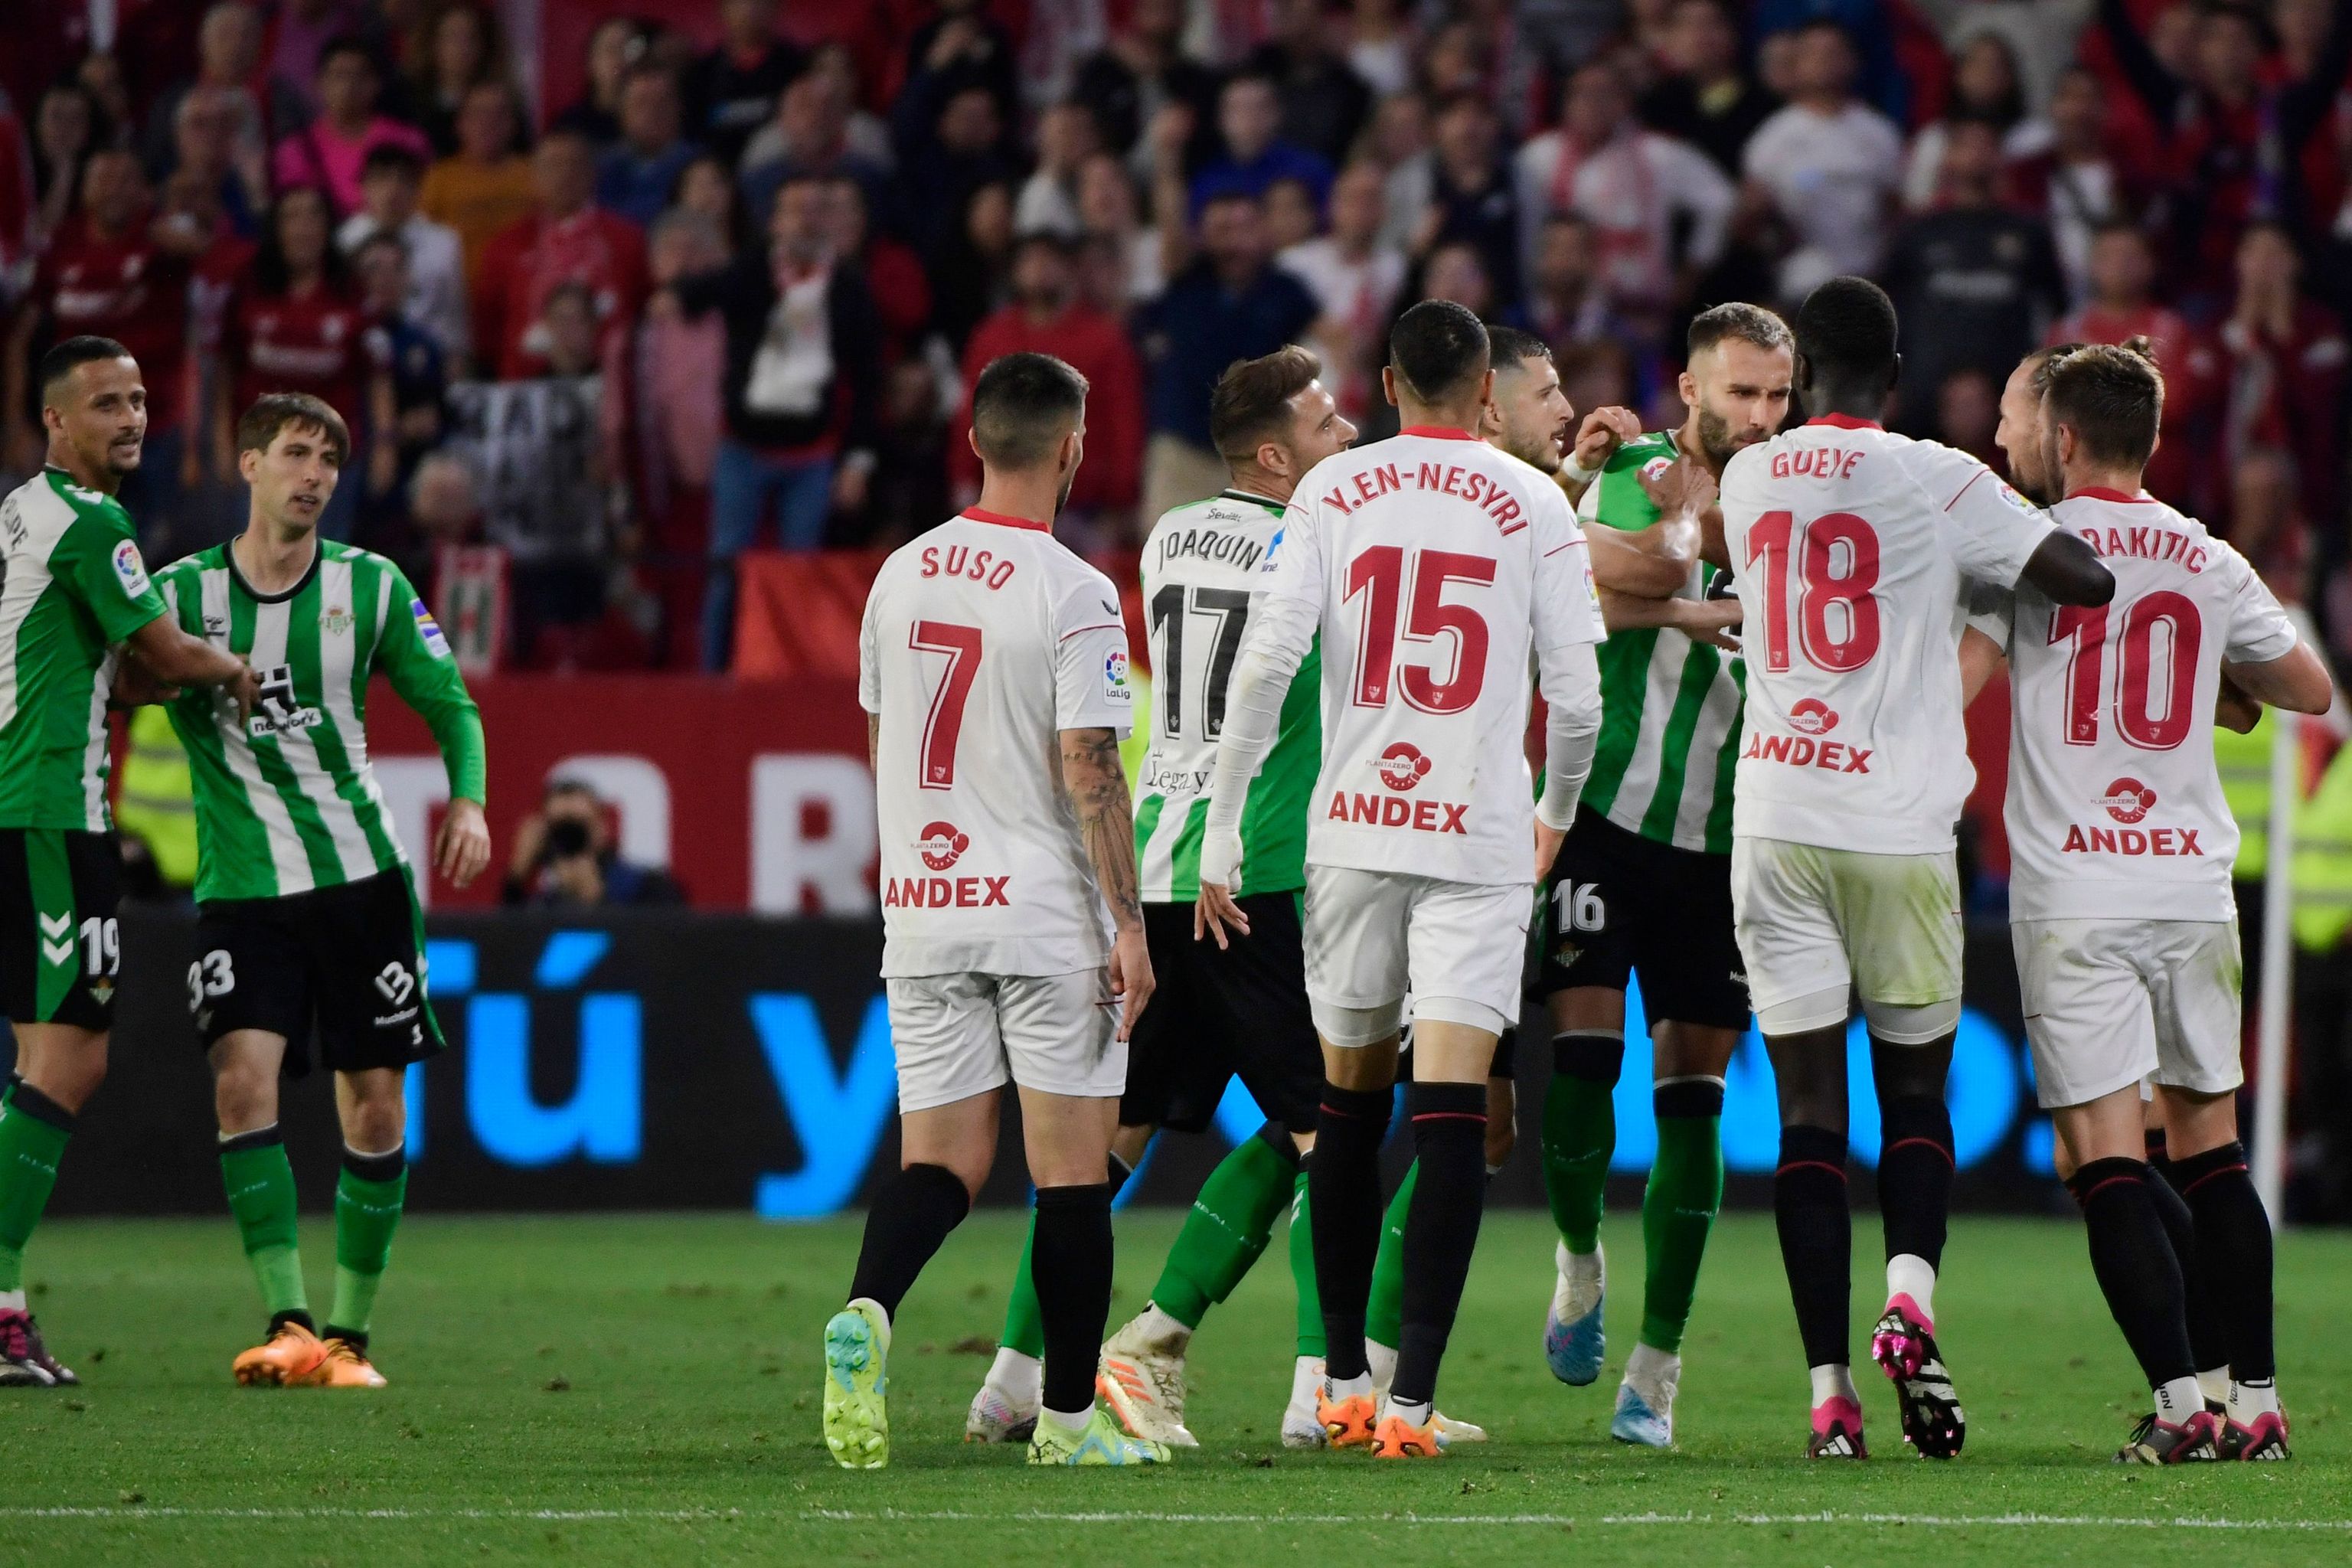 Tangana entre jugadores en el Sevilla Betis